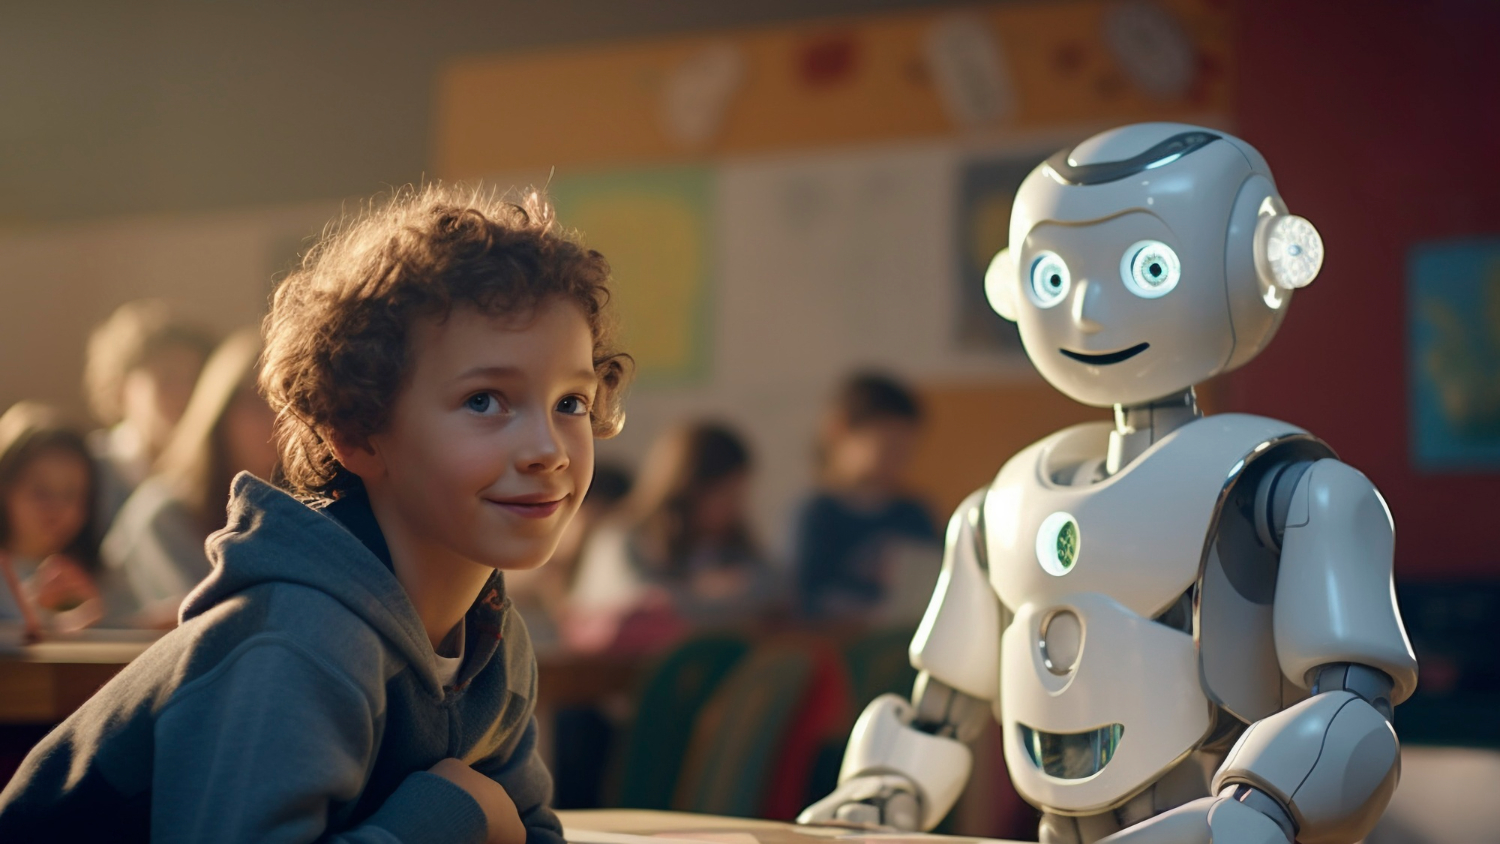 Educadores e especialistas refletem sobre o uso da inteligência artificial (IA) nas escolas